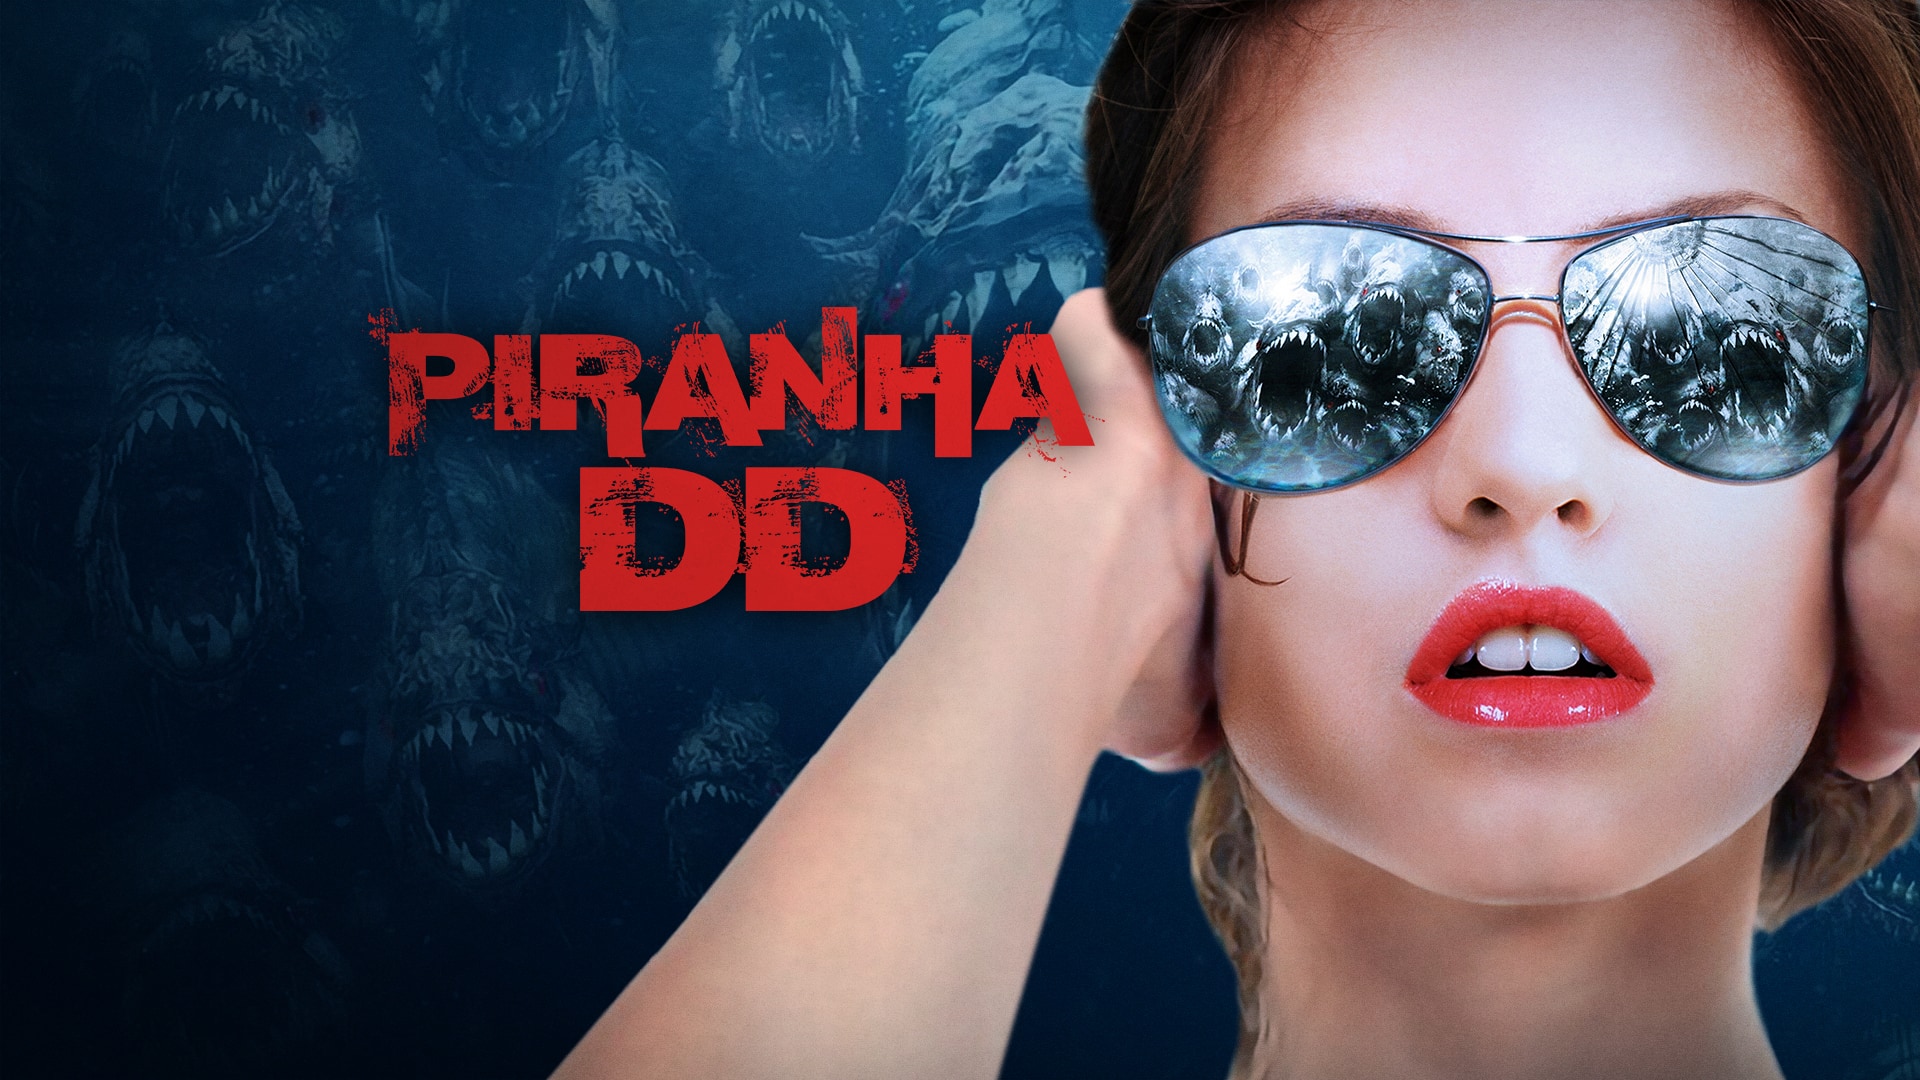 Watch Piranha 3DD Online | Stream Full Movies